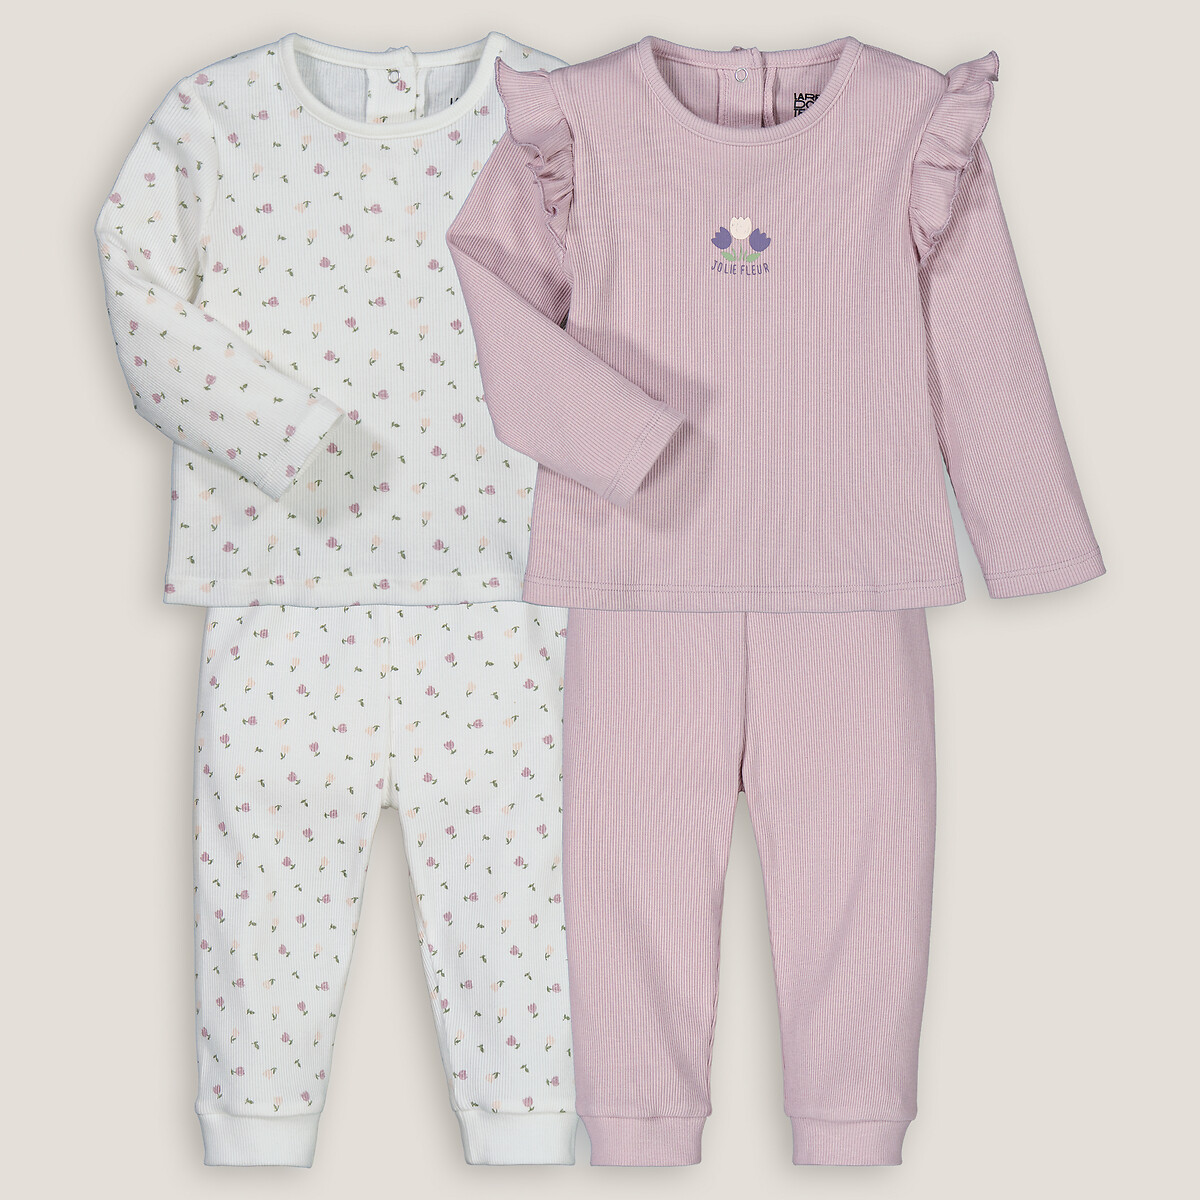 Комплект из двух пижам раздельных в рубчик 3 года - 94 см другие комплект из двух маек с воланами 3 года 94 см розовый